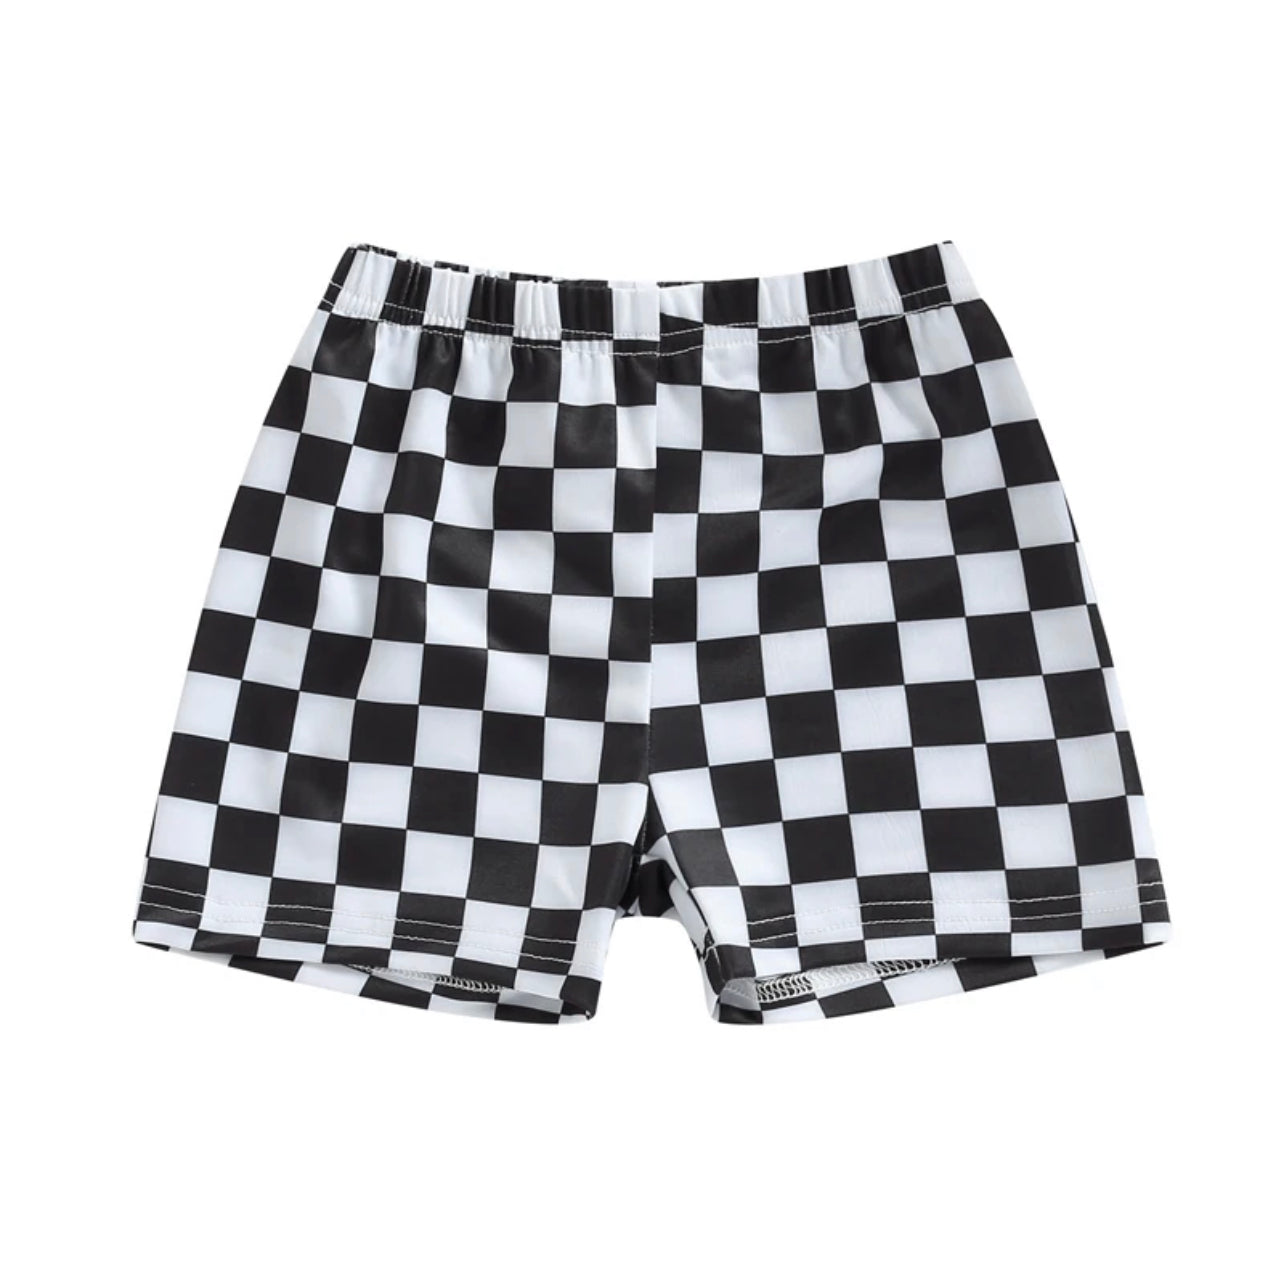 Black + white checkered swim shorts